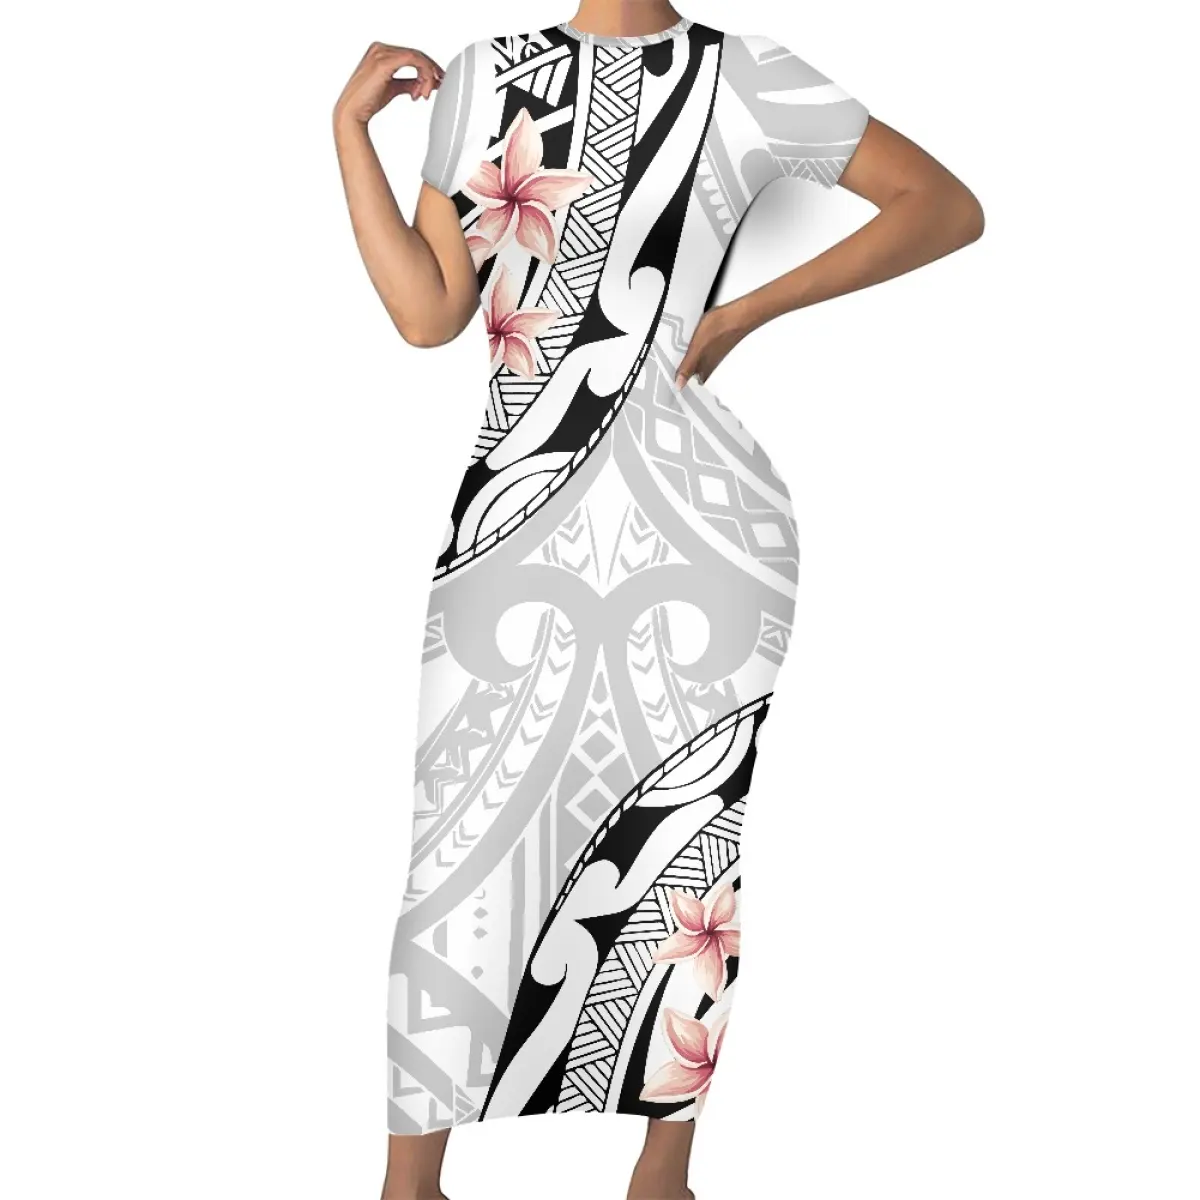 サモア部族デザイン女性デイリードレスポリネシアンプリント服プラスサイズ脂肪女性衣装ファッションフローラルマキシドレスMOQ1